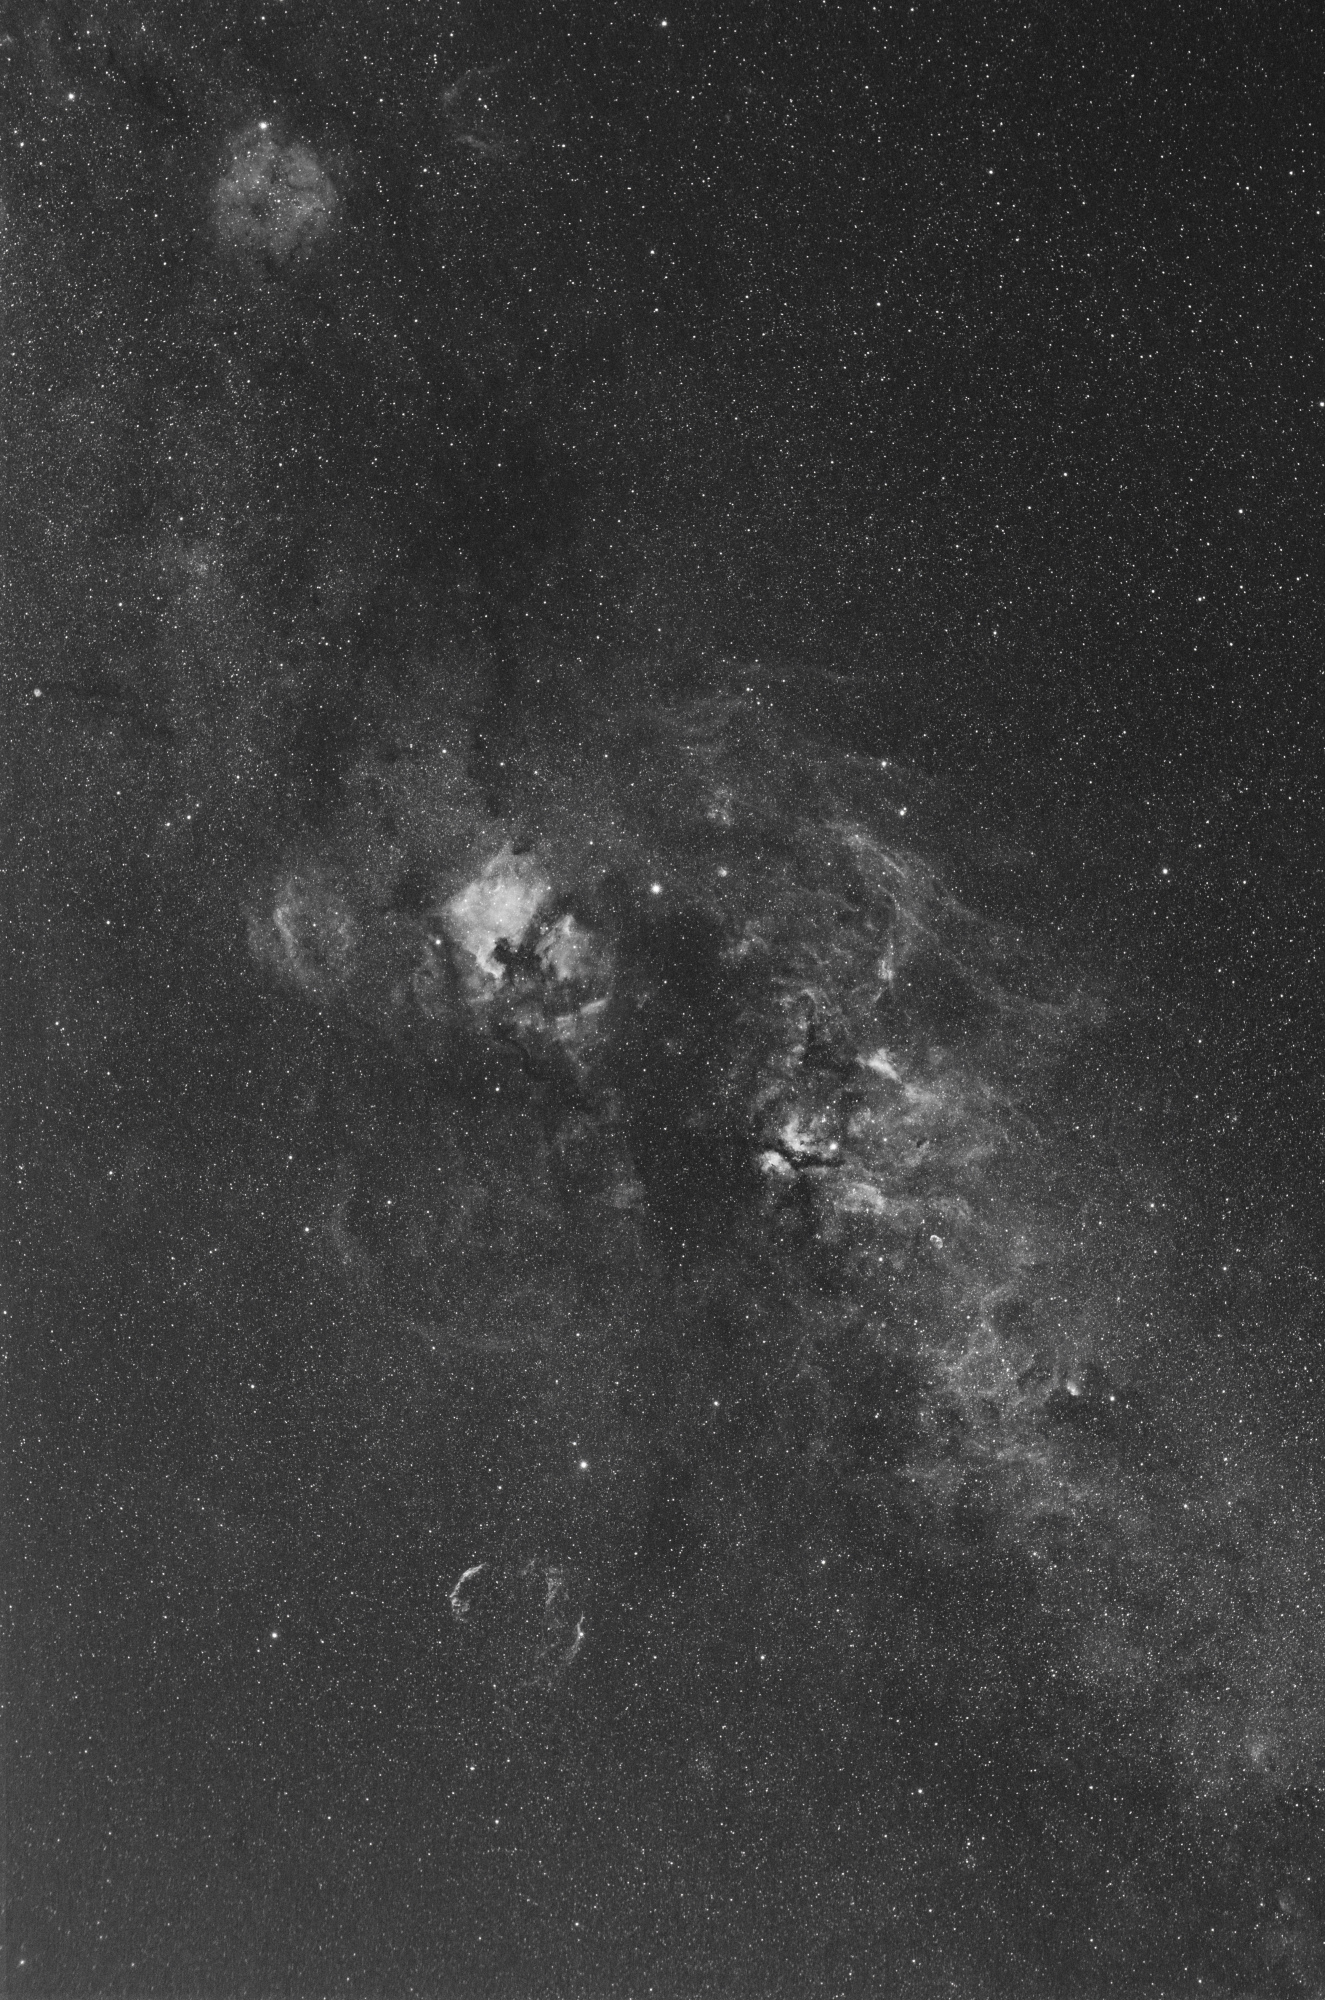 NGC_7000_H_alpha_66_x_2_min_D_V3.jpg